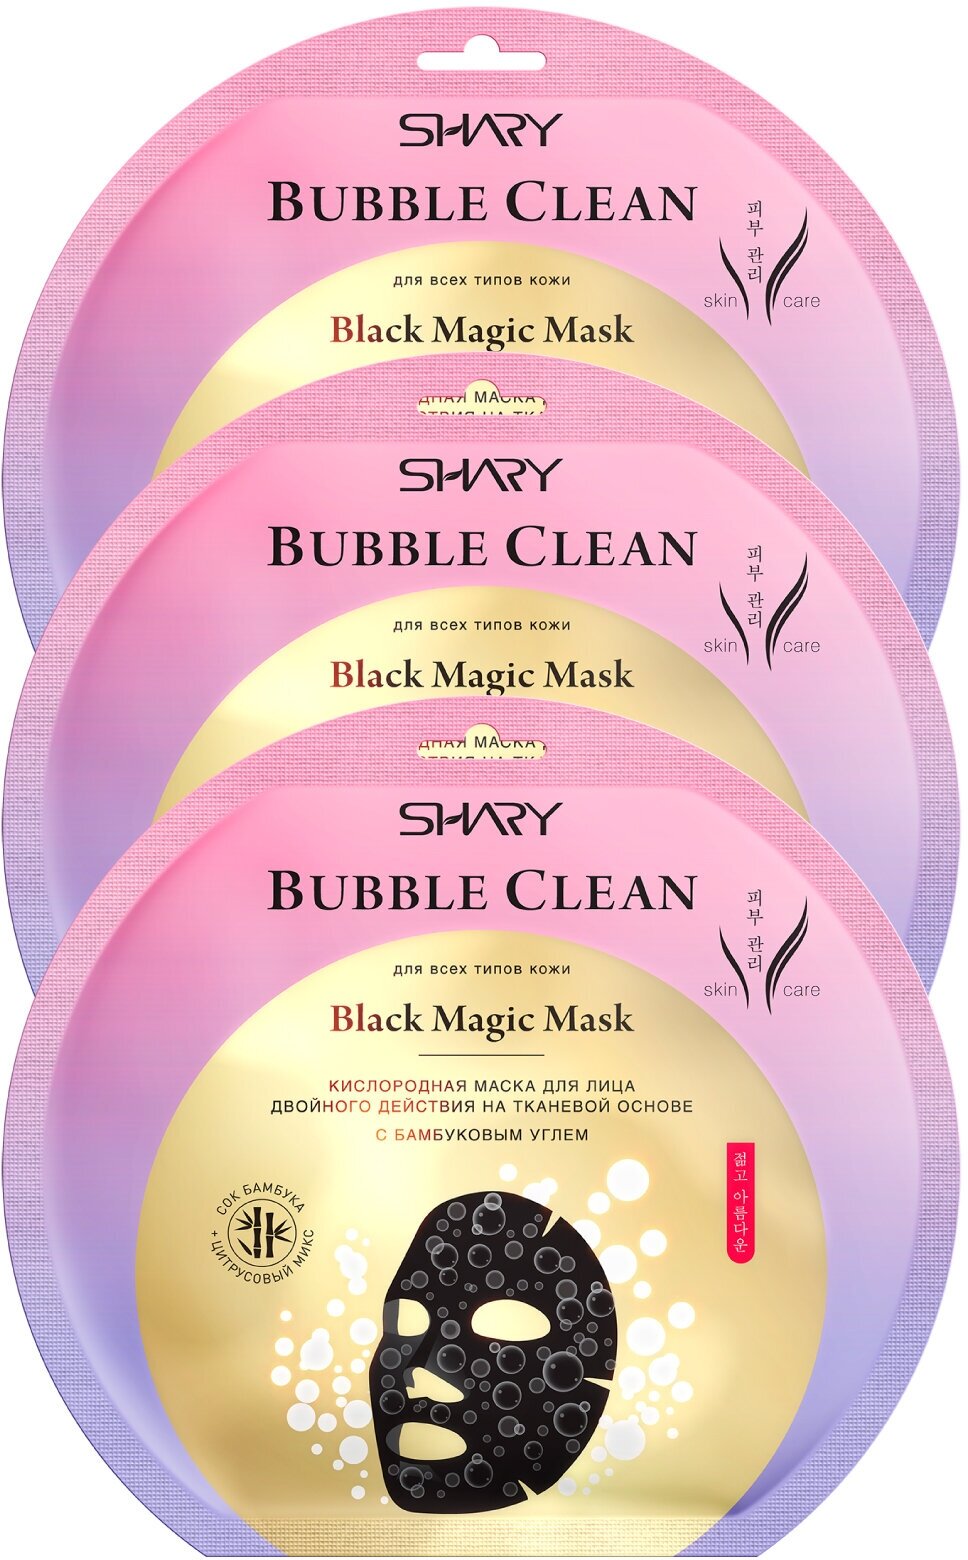 Shary Black Magic Кислородная маска для лица BUBBLE CLEAN, 20г * 3 шт